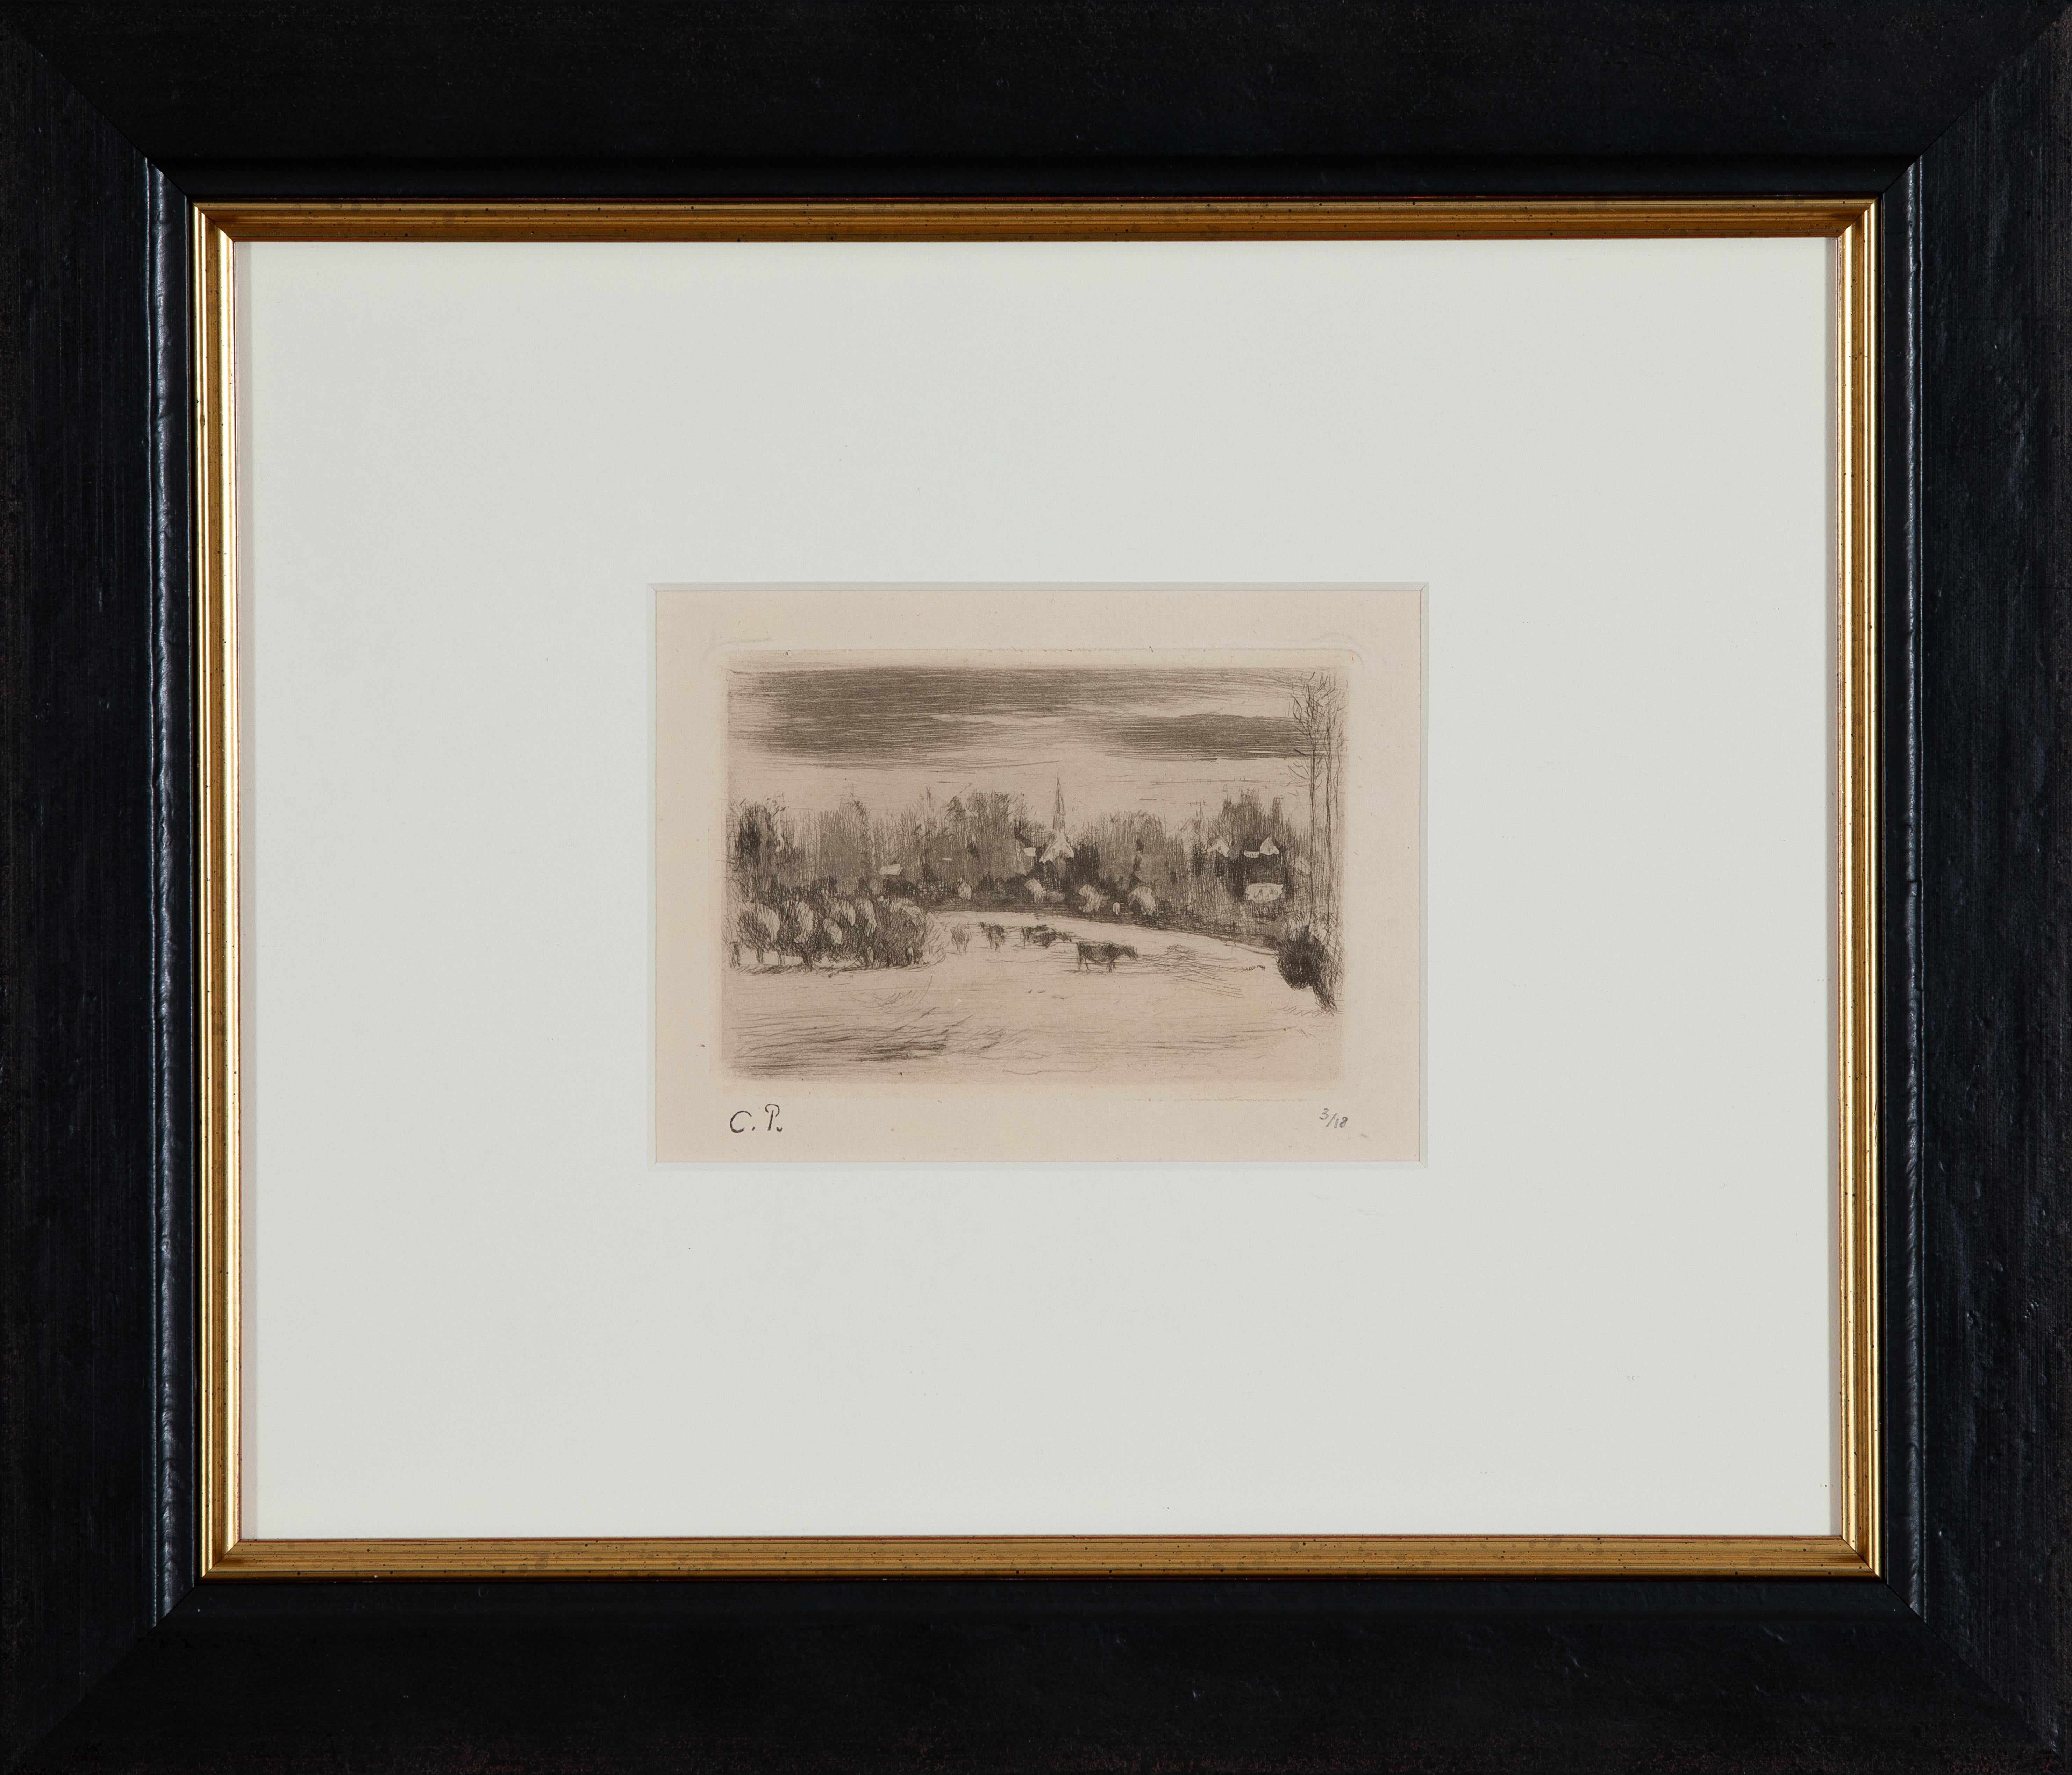 Prairies de Bazincourt by Camille Pissarro - Landscape etching For Sale 1